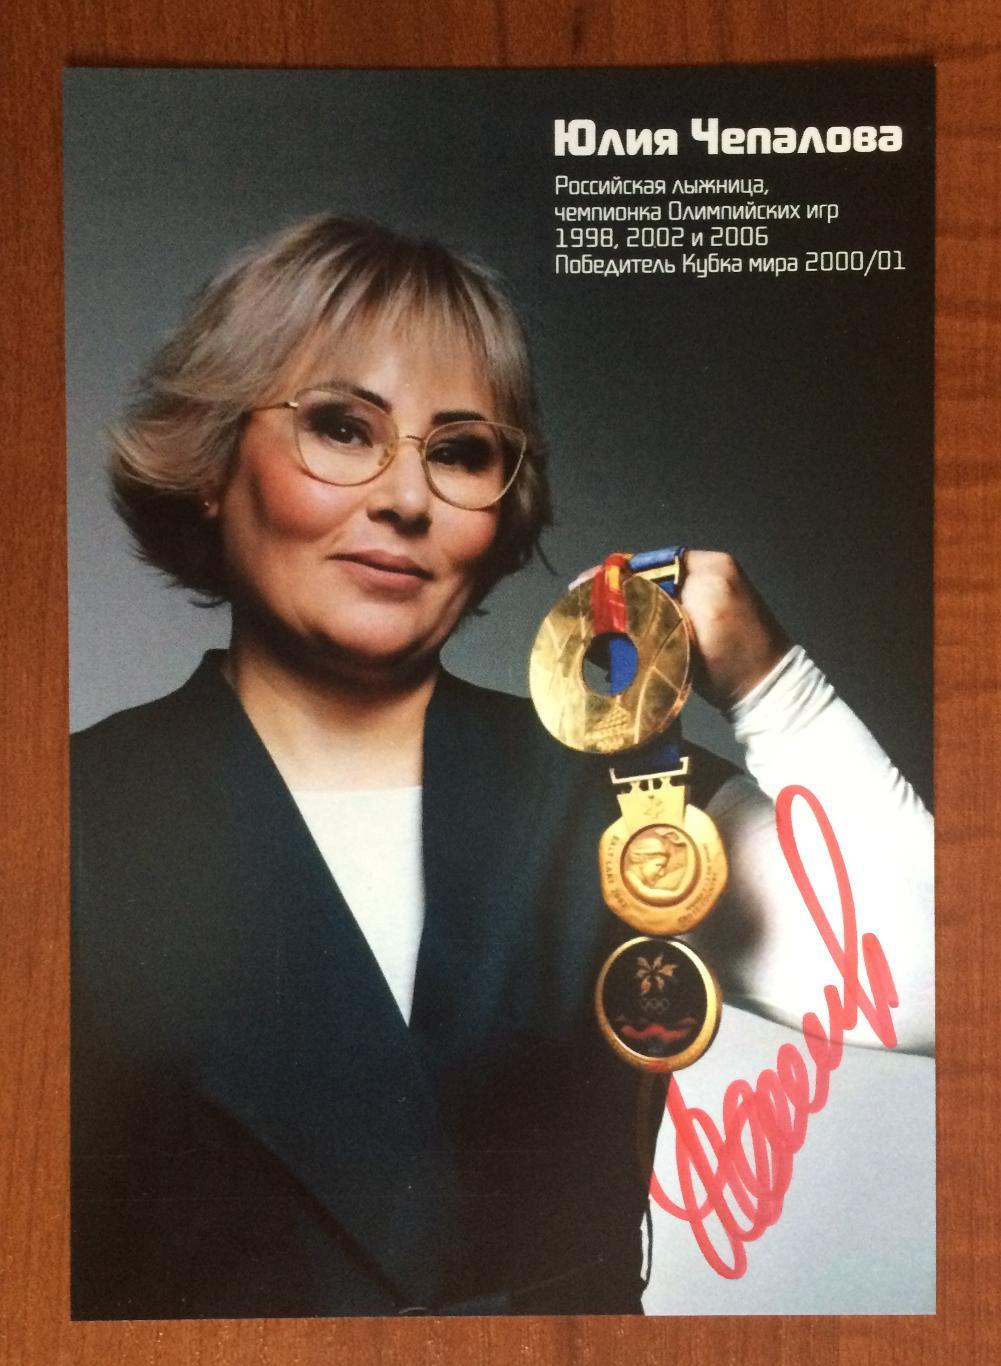 Автограф Юлия Чепалова лыжница Олимпиада золото 1998, 2002 и 2006 год 1